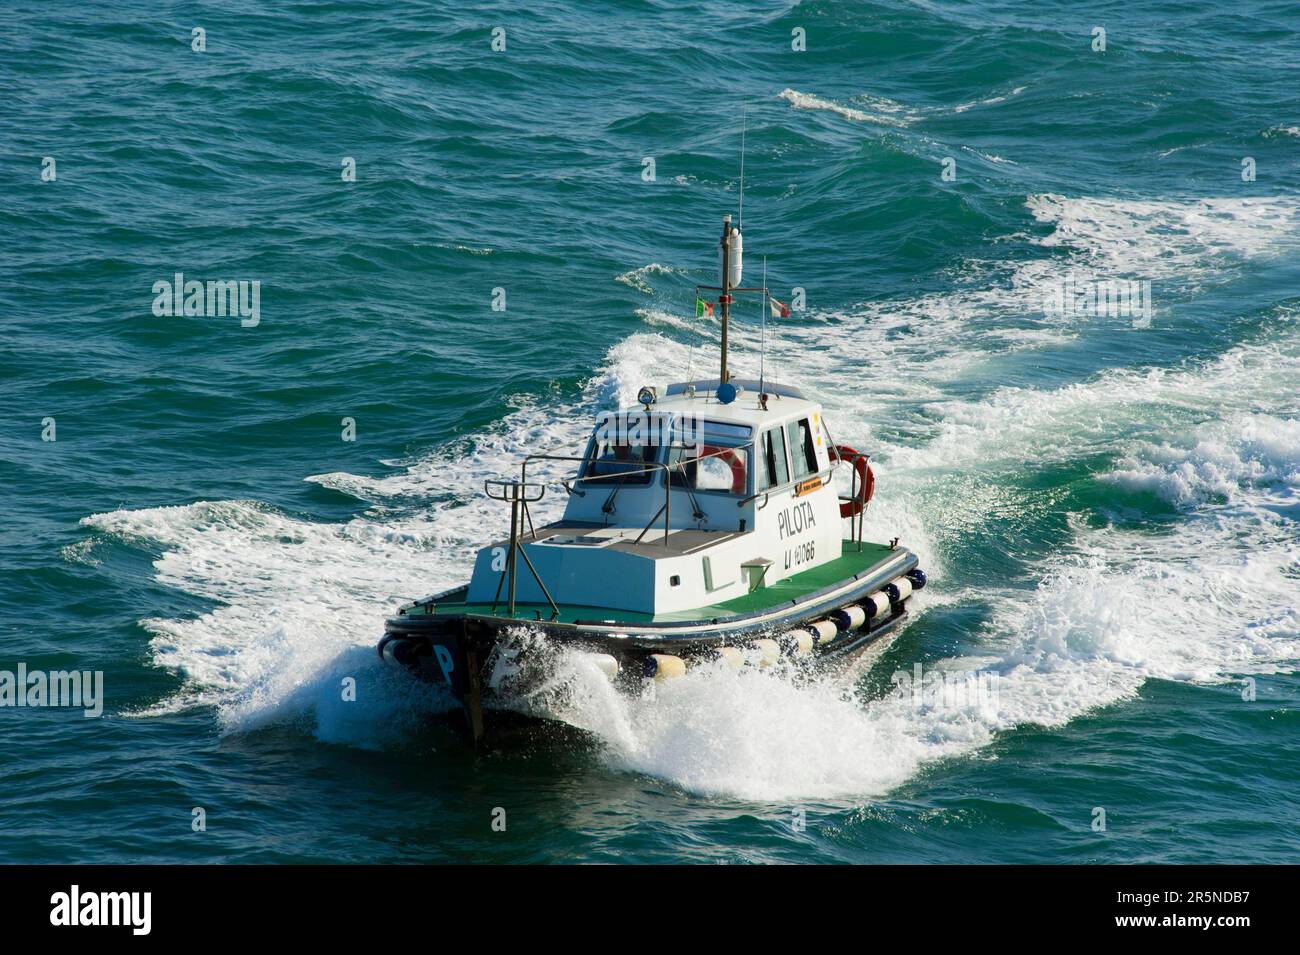 Pilot boat, Livorno, Italy Stock Photo